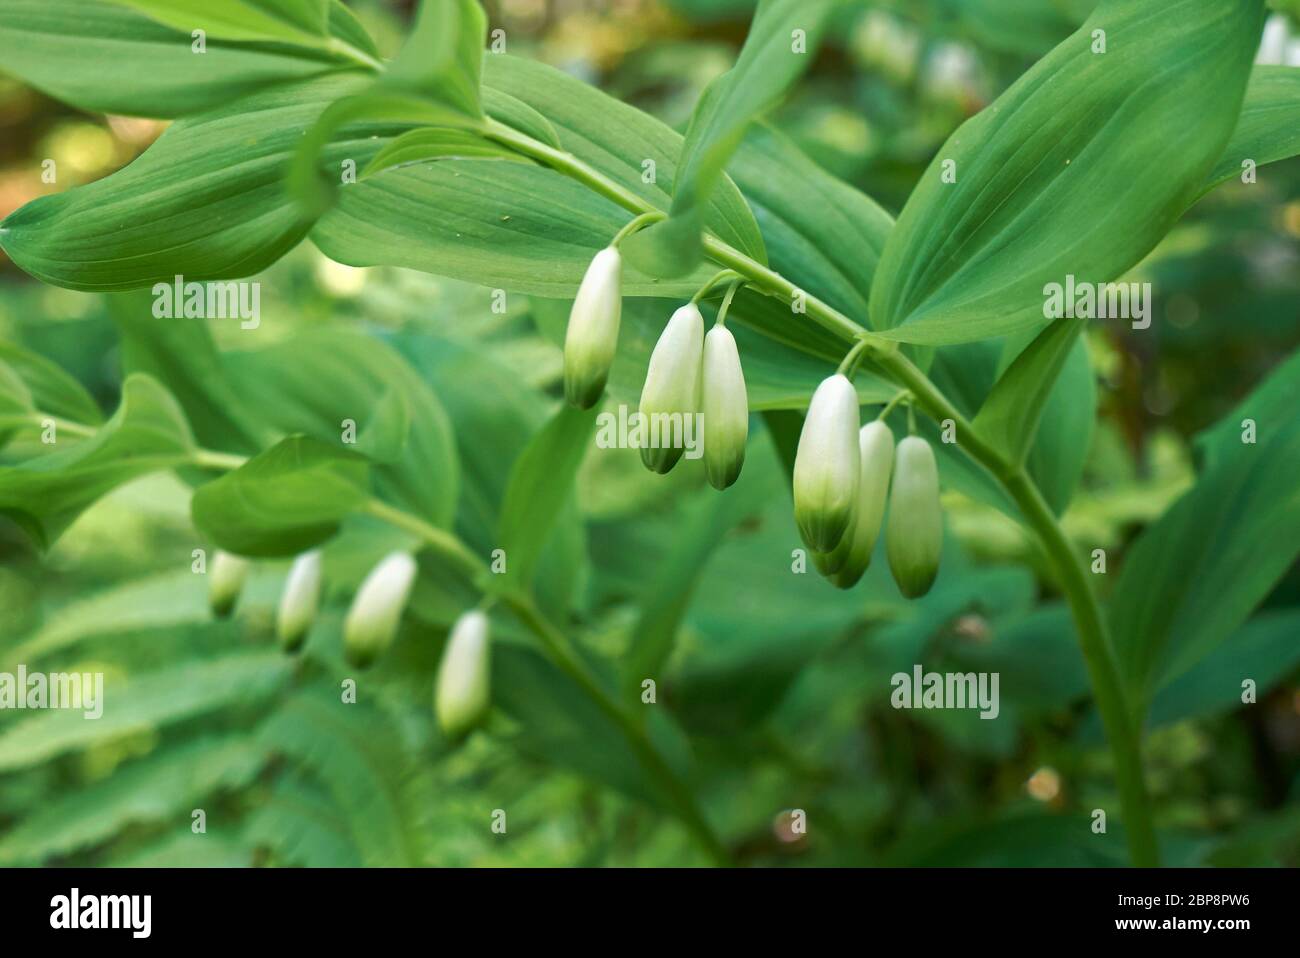 Polygonatum odoratum in bloom Stock Photo